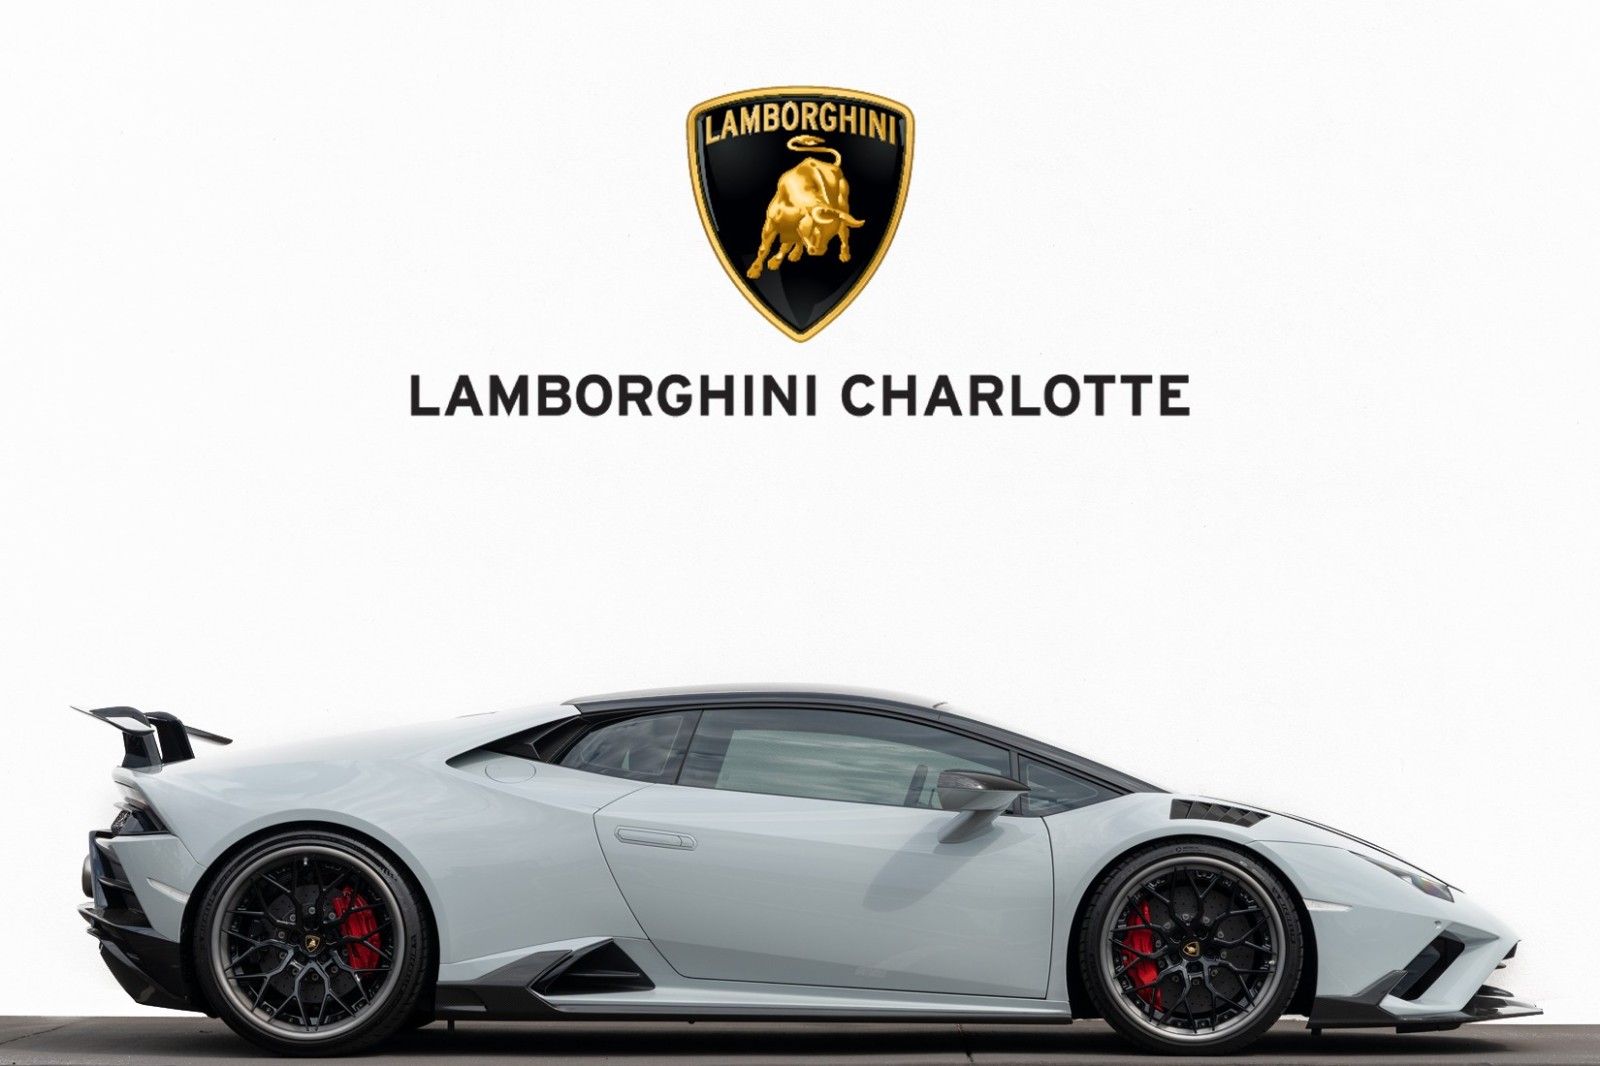 /2020 Lamborghini Huracan-Evo